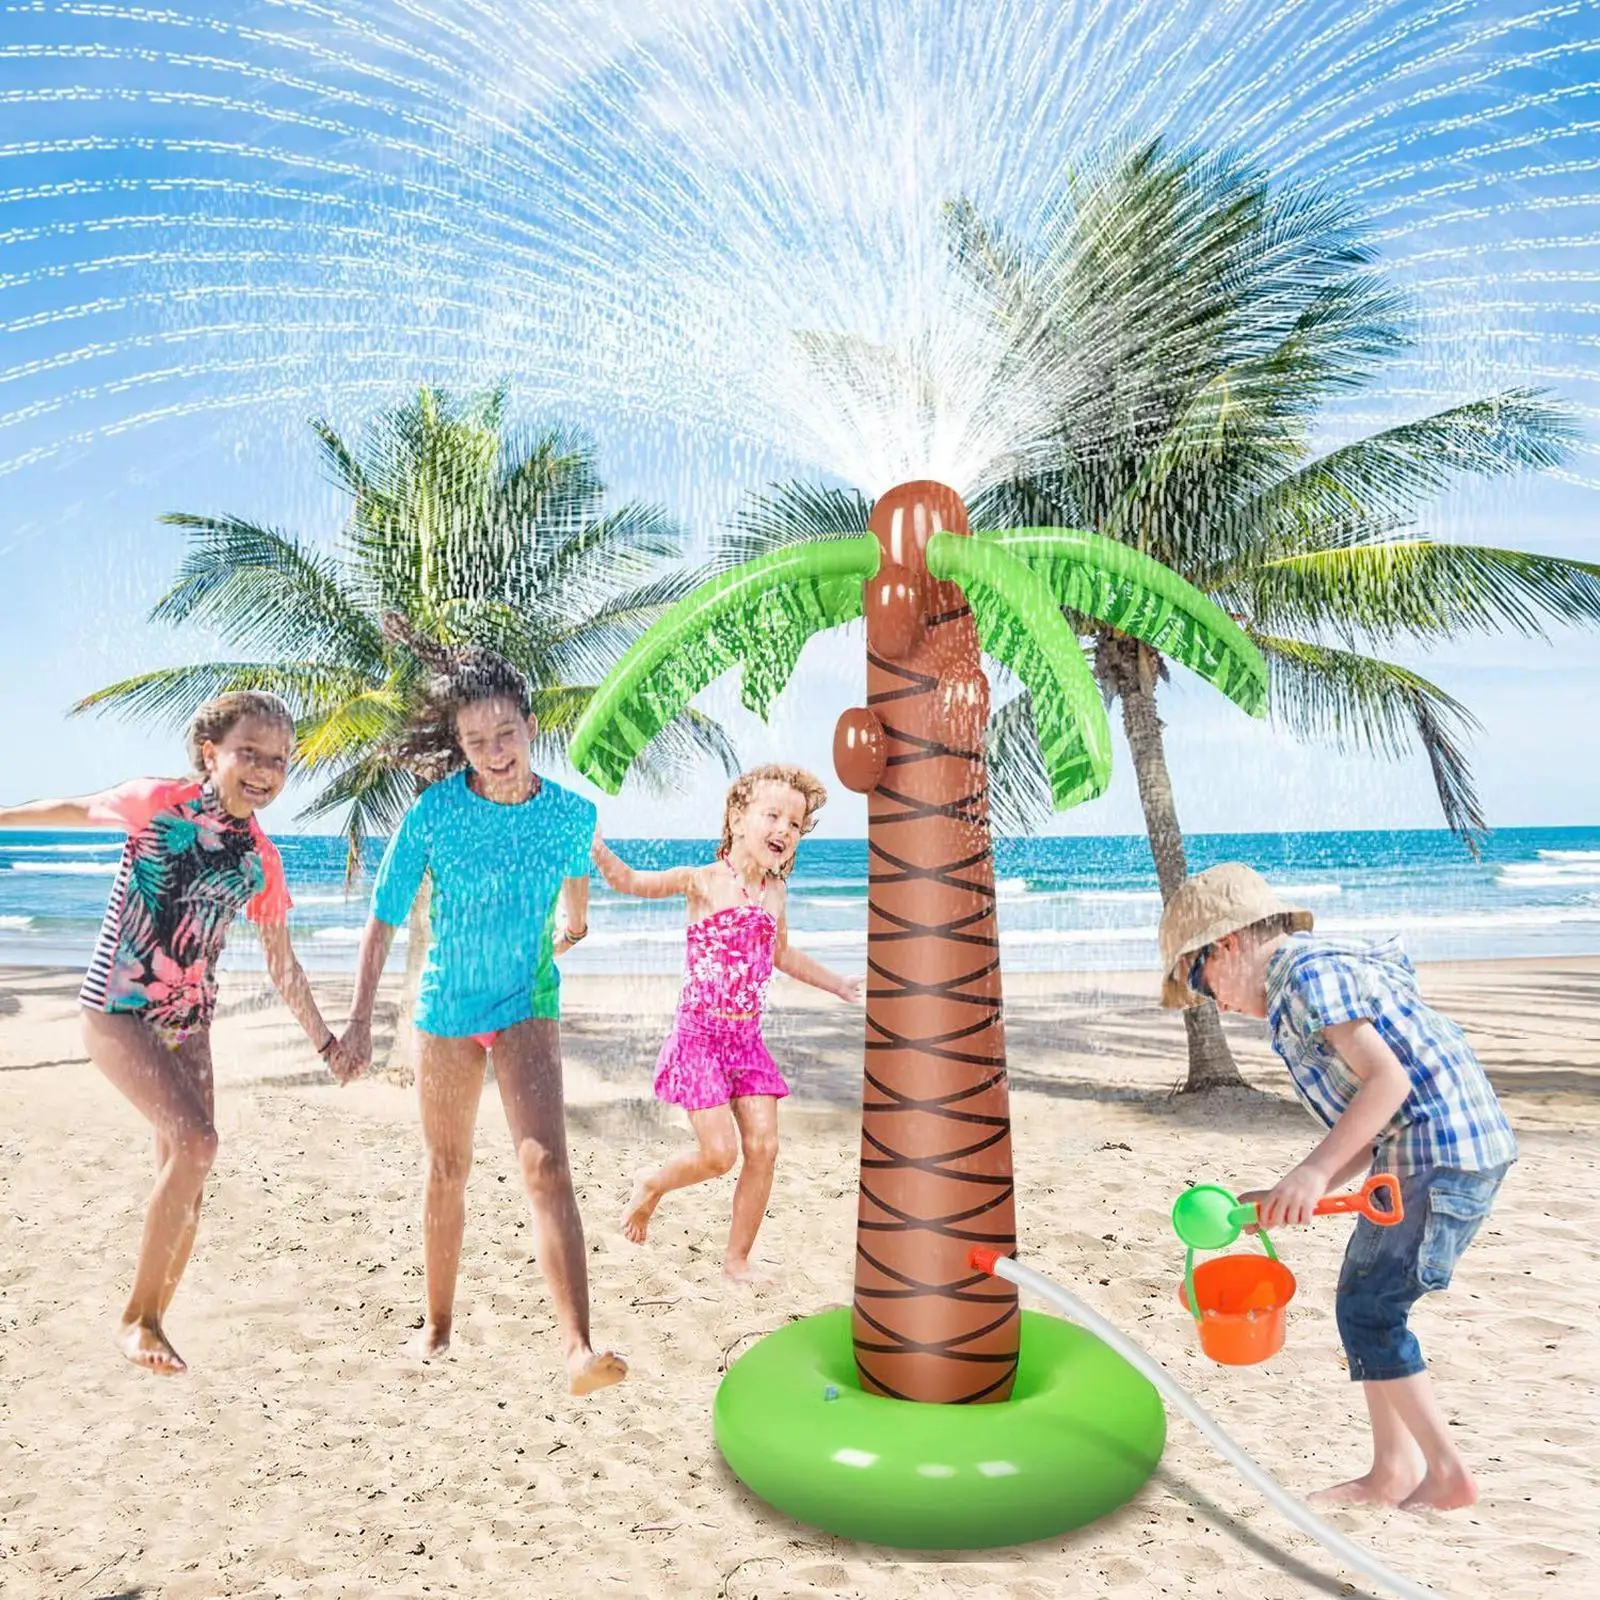 

Надувной разбрызгиватель, кокосовое дерево из ПВХ, милая искусственная вода, пальмовое дерево, спрей для детей, летняя пляжная опора для дет...